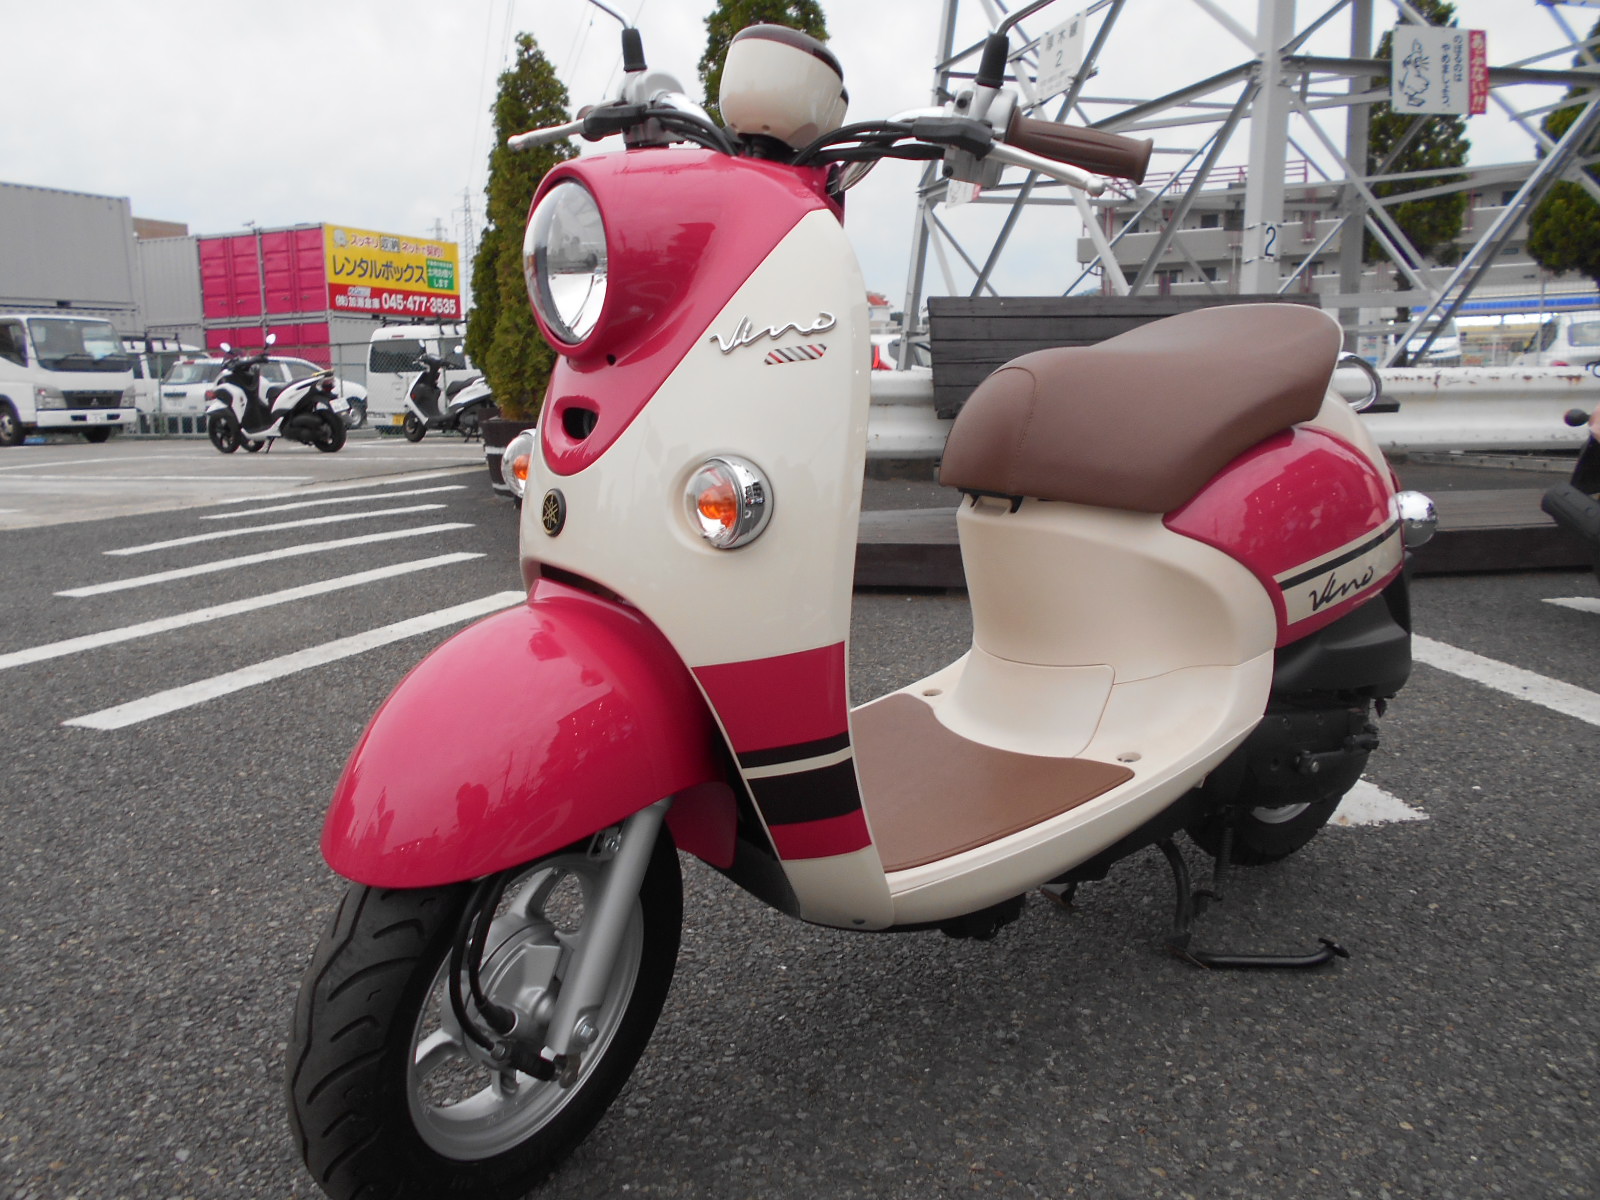 ピンクな原付 最新情報 U Media ユーメディア 中古バイク 新車バイク探しの決定版 神奈川 東京でバイク探すならユーメディア